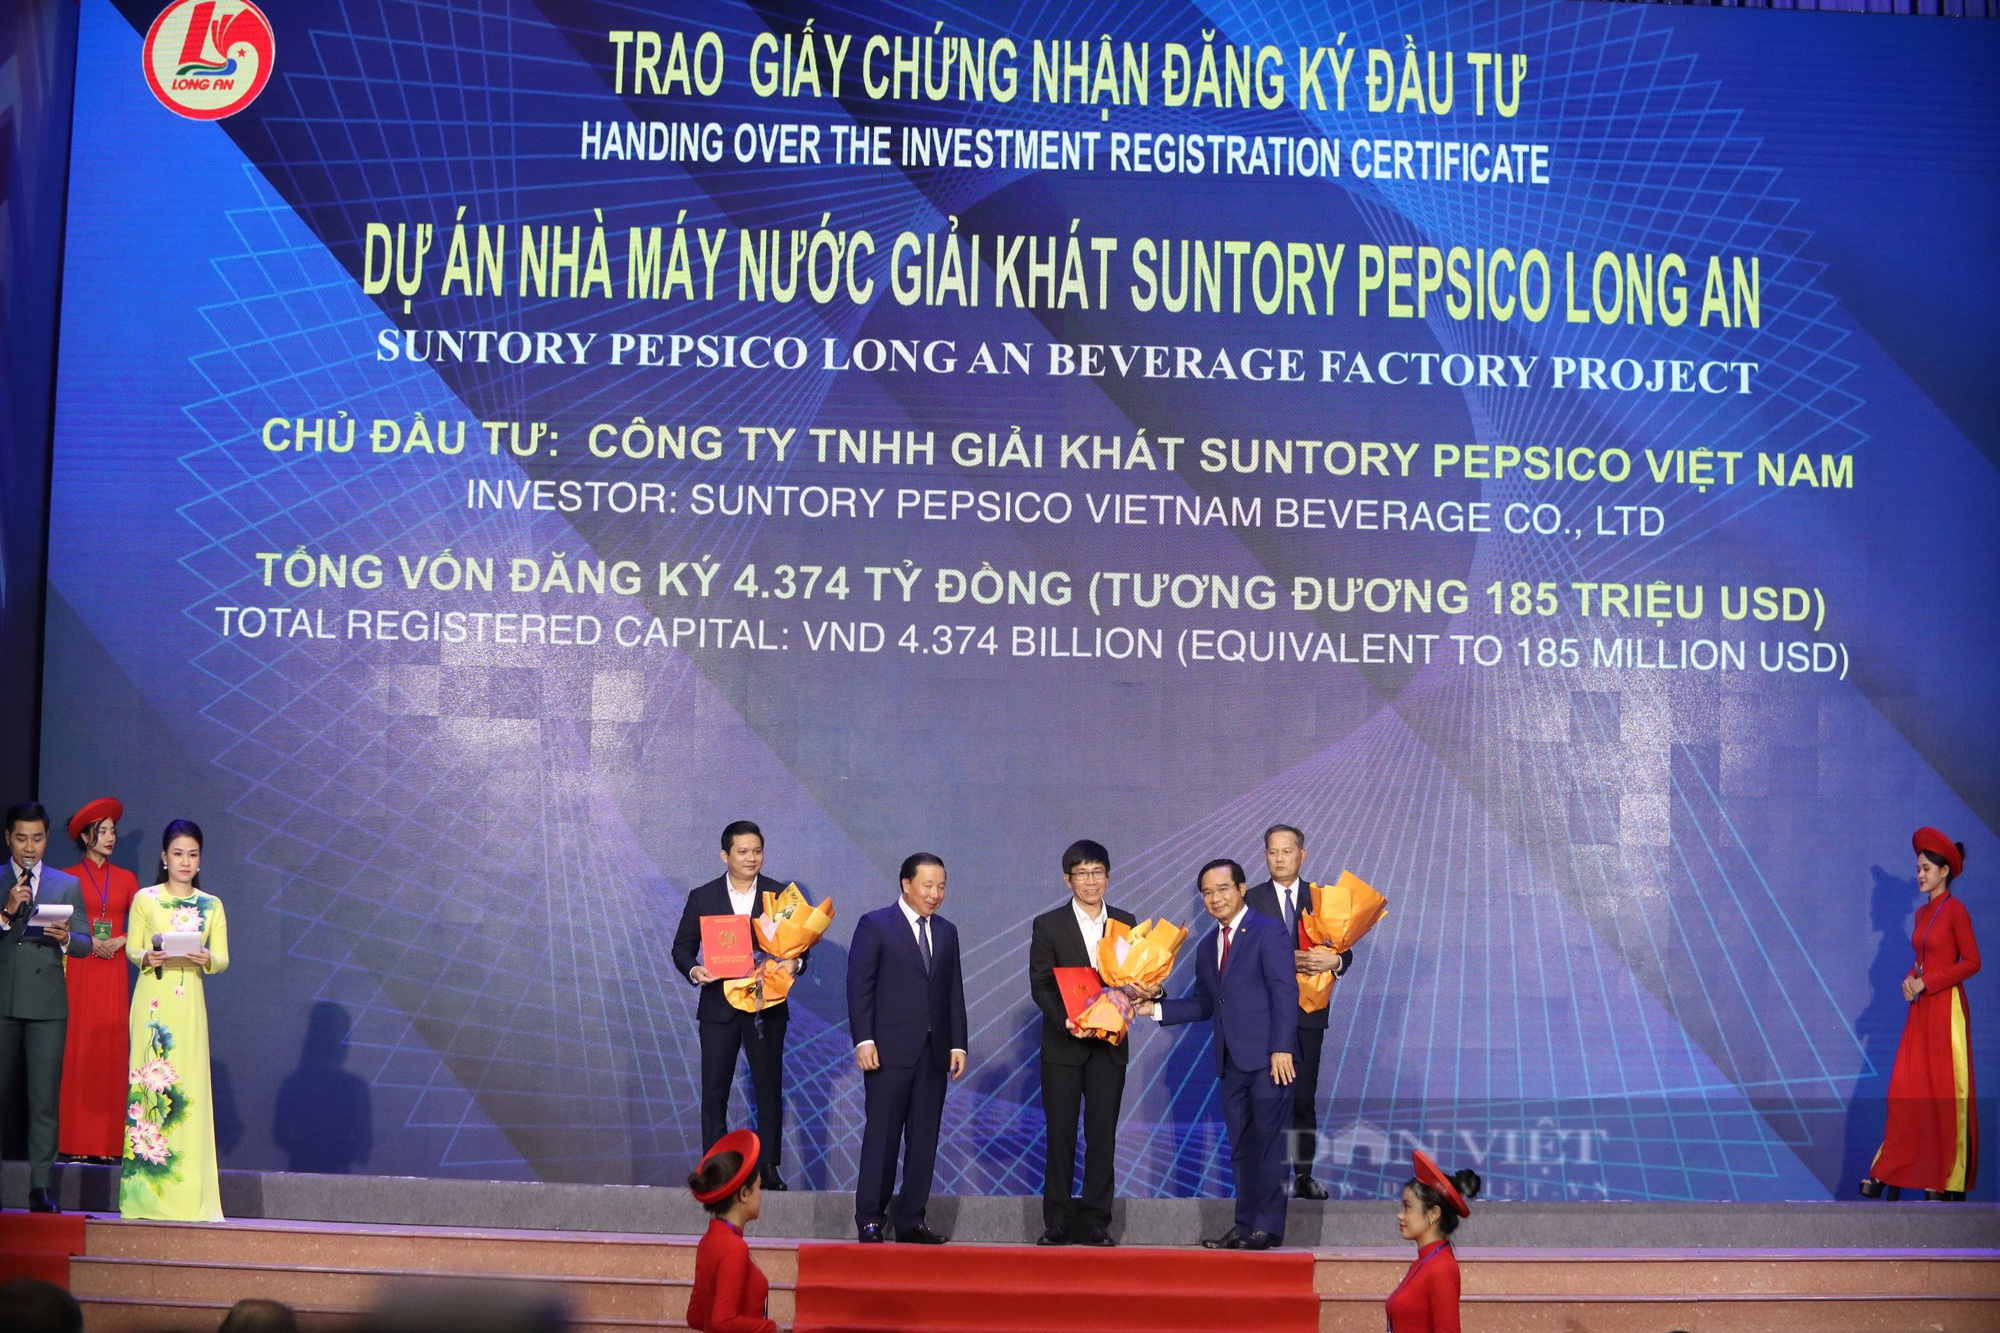 Thủ tướng chính phủ Phạm Minh Chính kỳ vọng những thế mạnh của tỉnh Long An khi công bố kế hoạch xúc tiền đầu tư - Ảnh 3.